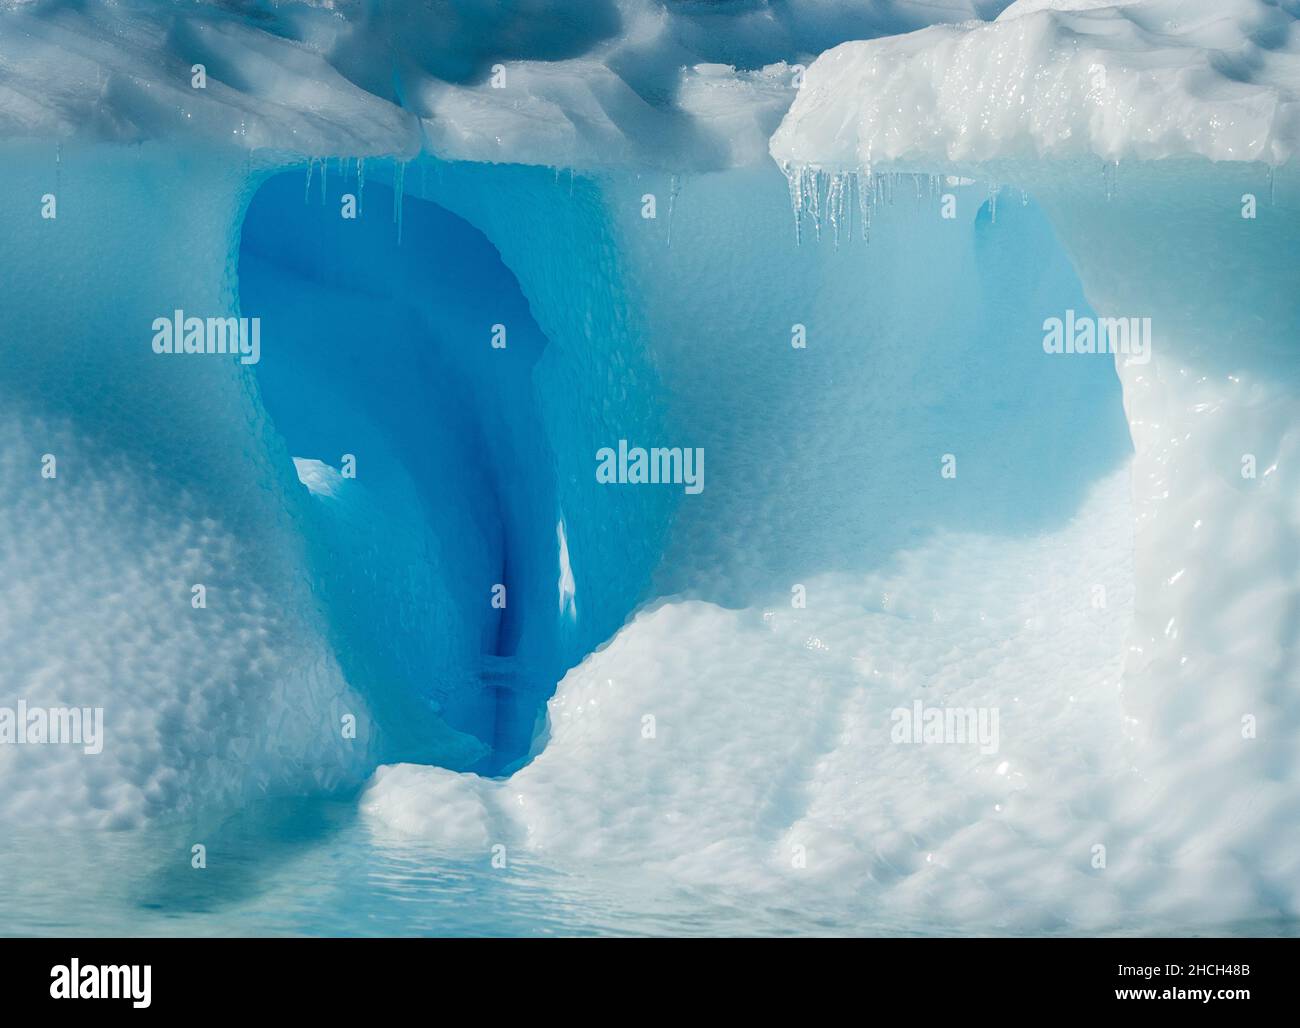 Photographie de paysage d'un iceberg avec une arche entourée de glace bleue dans une formation de vagues à l'île Danco, en Antarctique Banque D'Images